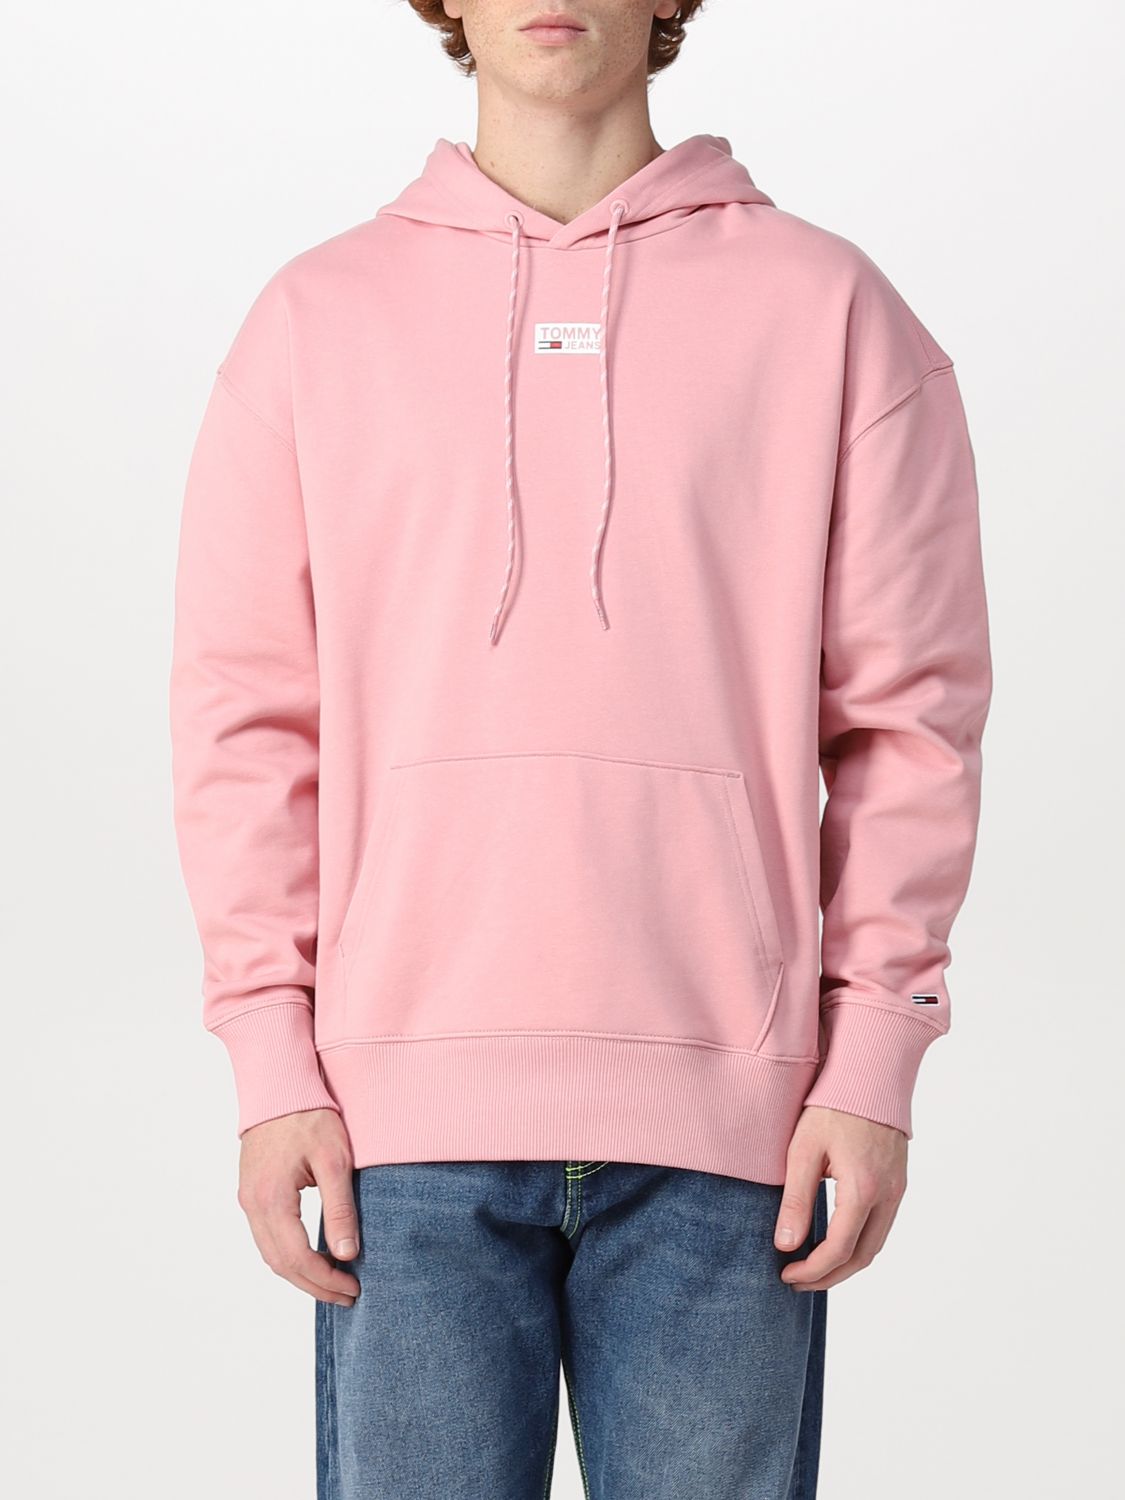 Sweatshirt Tommy Hilfiger: Tommy Hilfiger Herren Sweatshirt pink 1